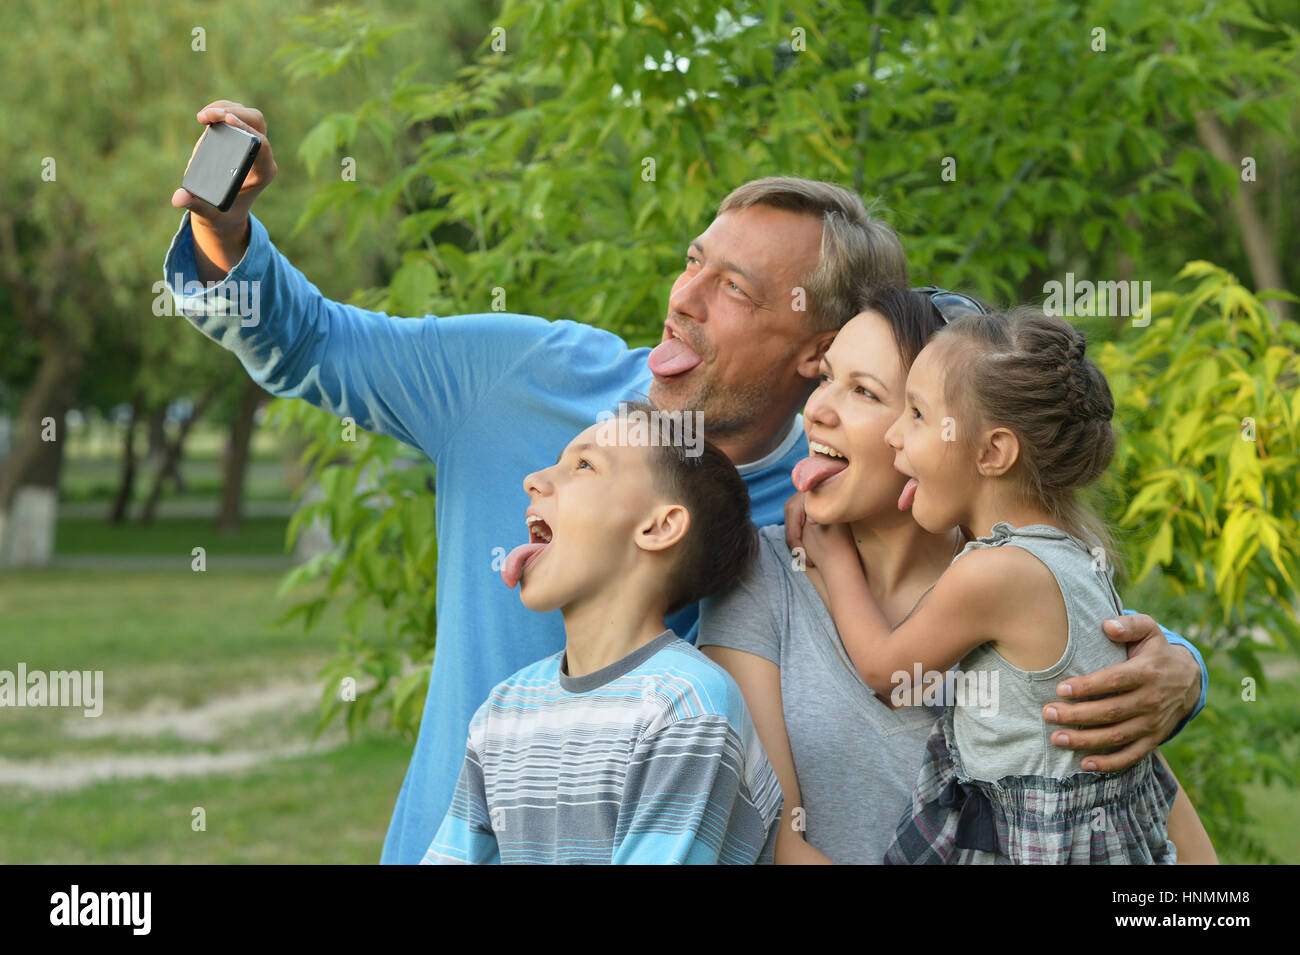 Family taking selfie in park Stock Photo